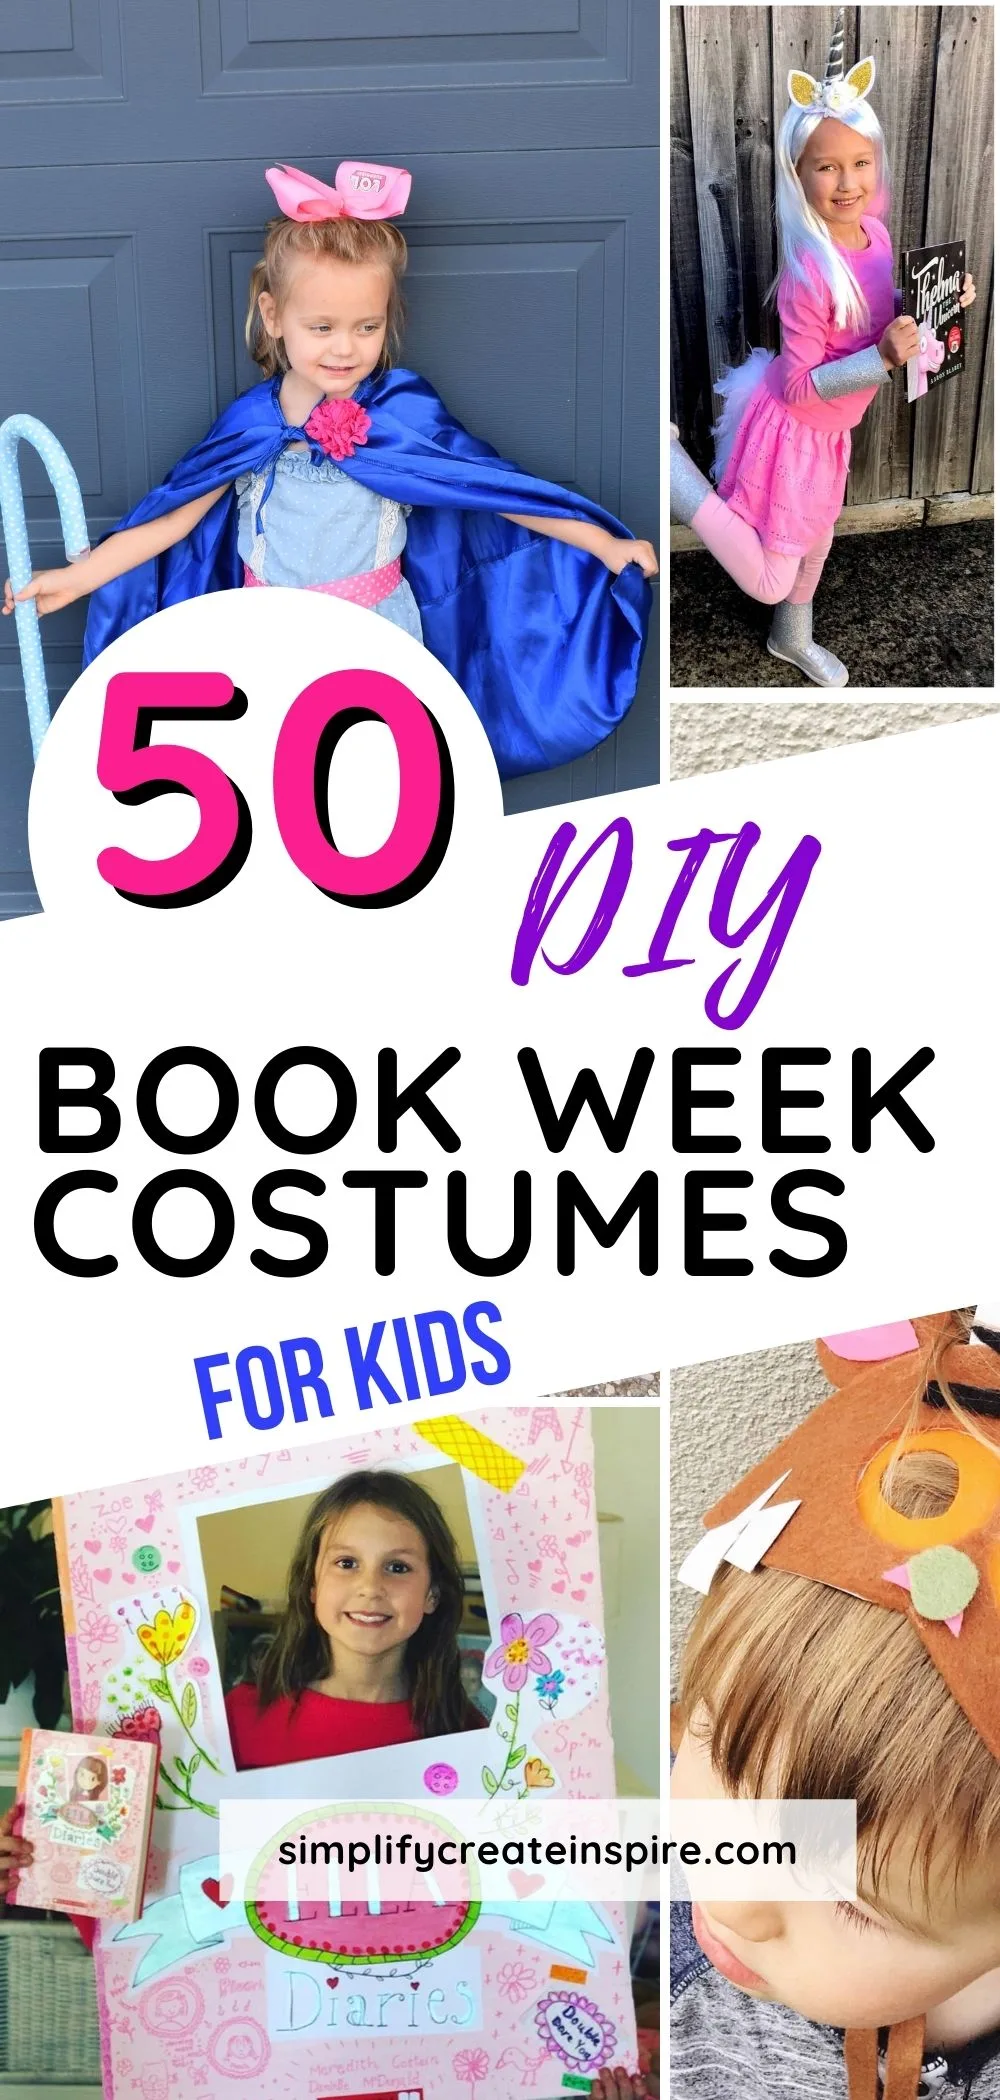 Diy book week costumes